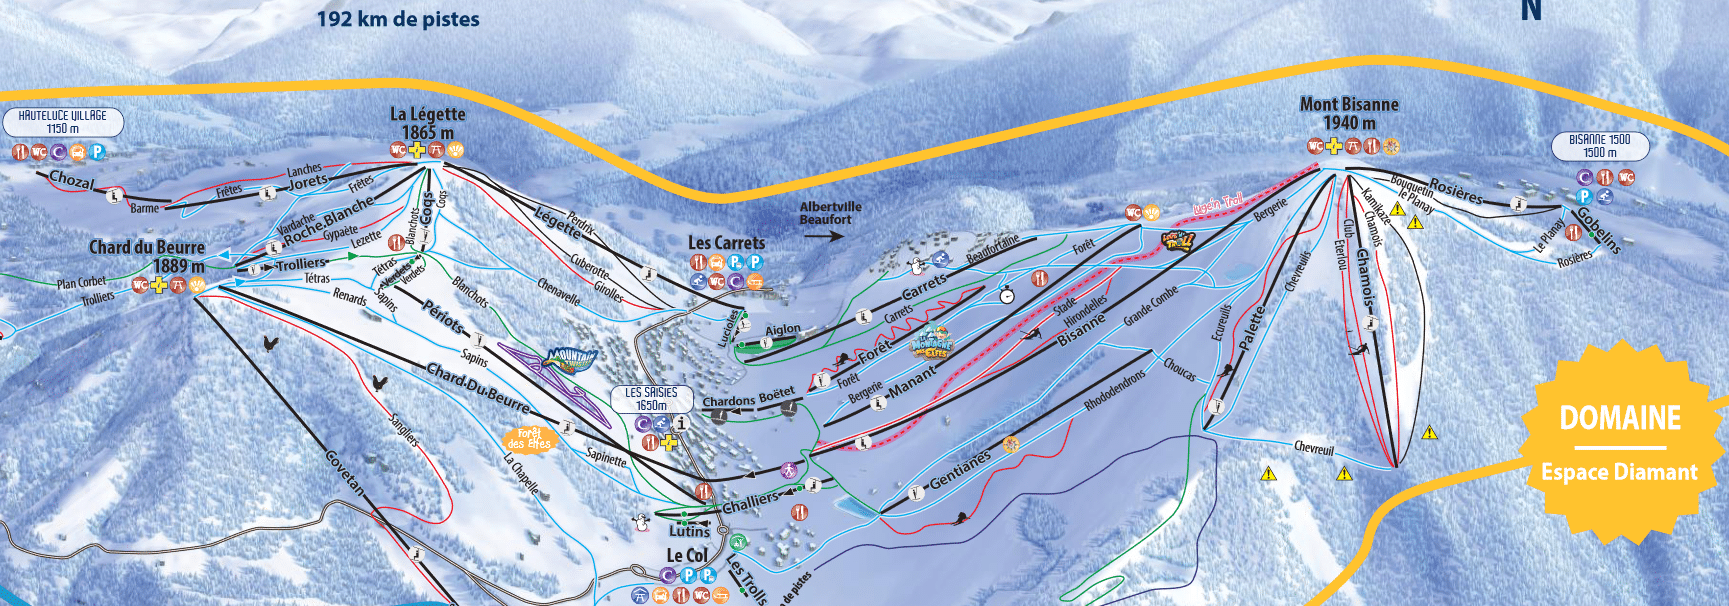 les saisies plan des pistes de ski